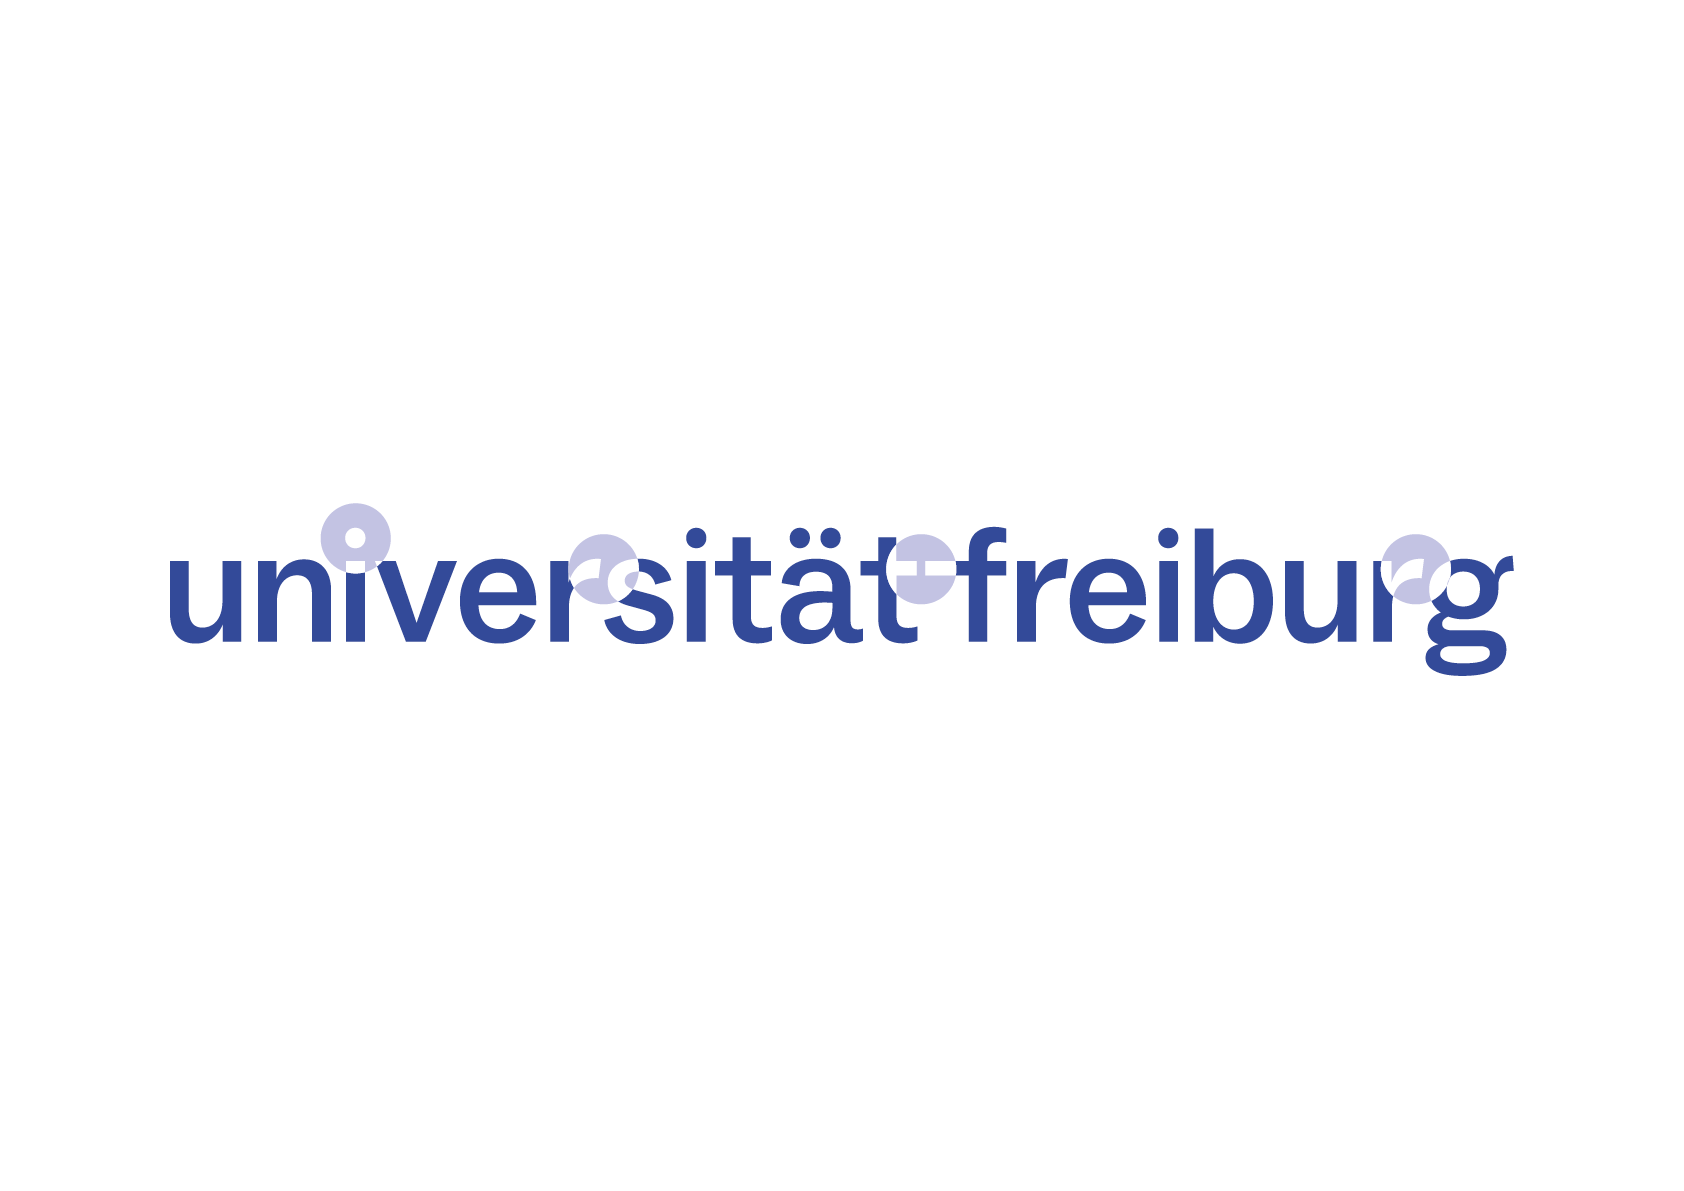 Blaue Wortmarke der Universität auf weißem Hintergrund mit ihren formalen Besonderheiten